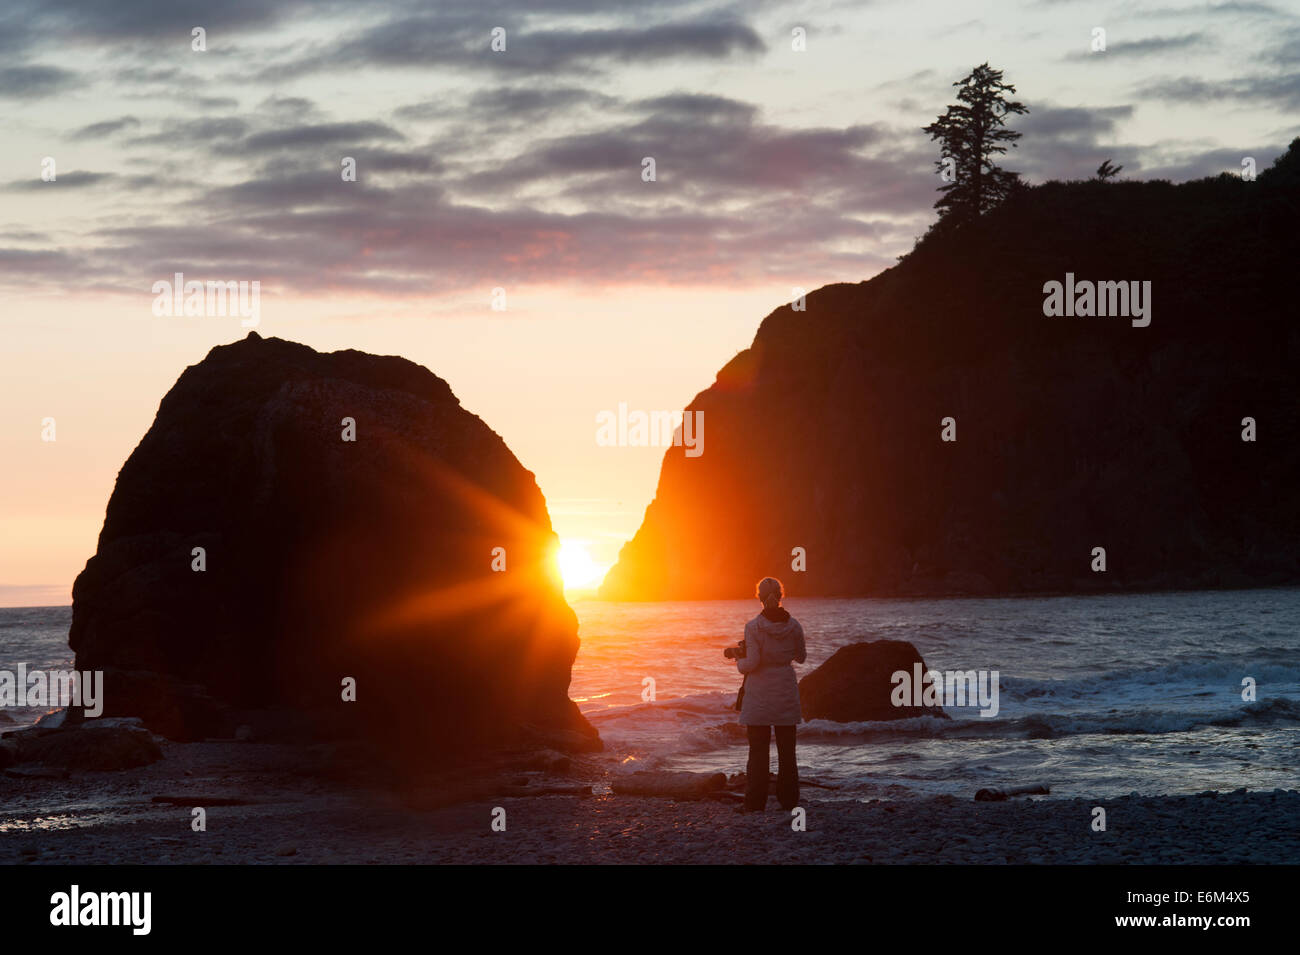 Sunset, Ruby Beach, Olympic Penninsula, Pacific coast, Washington state, US Stock Photo